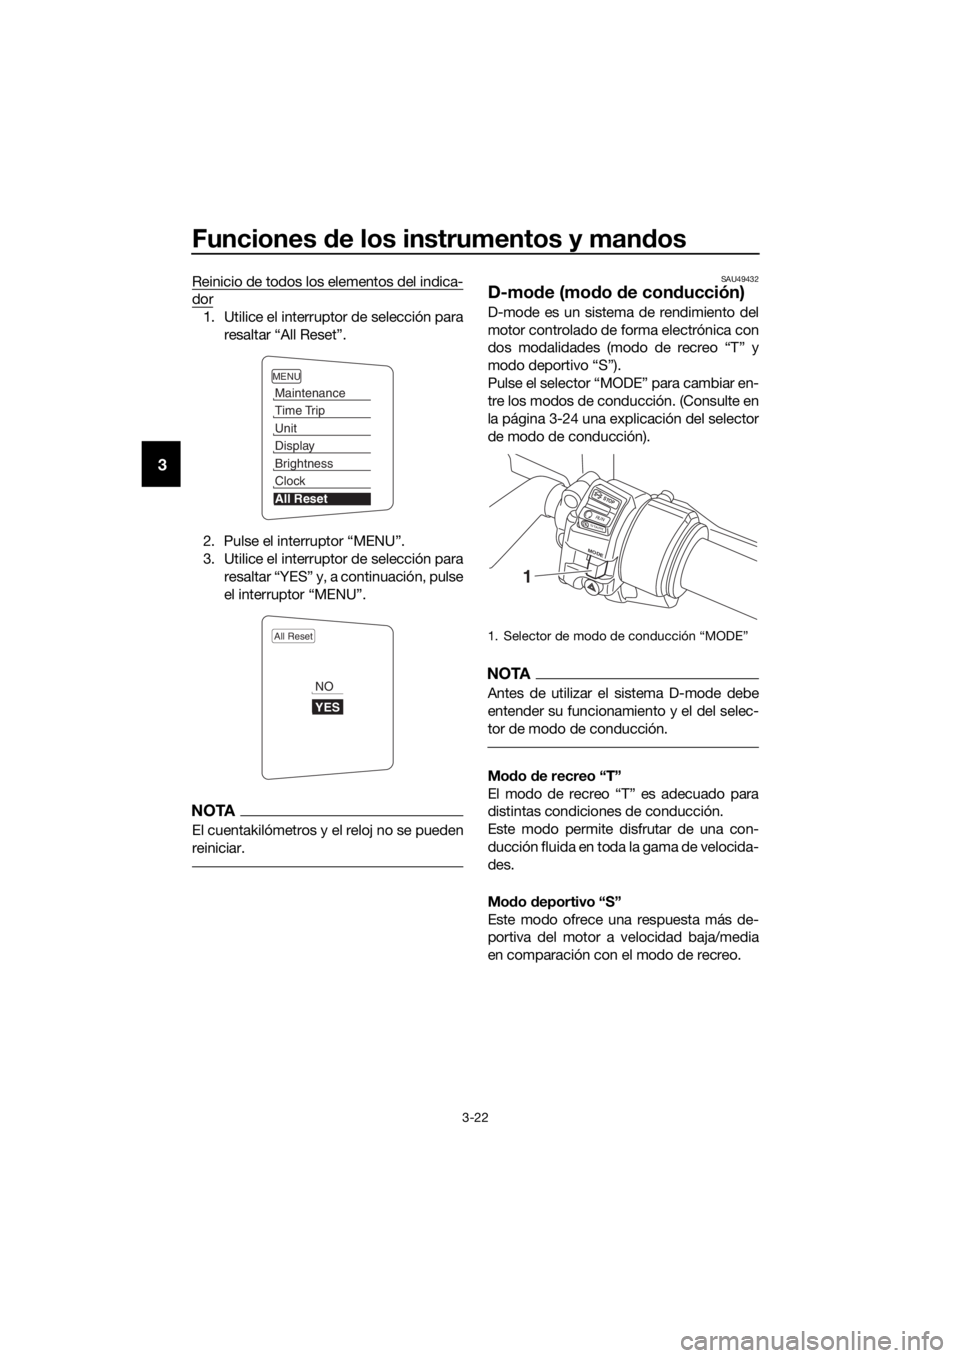 YAMAHA FJR1300AE 2016  Manuale de Empleo (in Spanish) Funciones de los instrumentos y man dos
3-22
3
Reinicio de todos los elementos del indica-
dor
1. Utilice el interruptor de selección para
resaltar “All Reset”.
2. Pulse el interruptor “MENU”